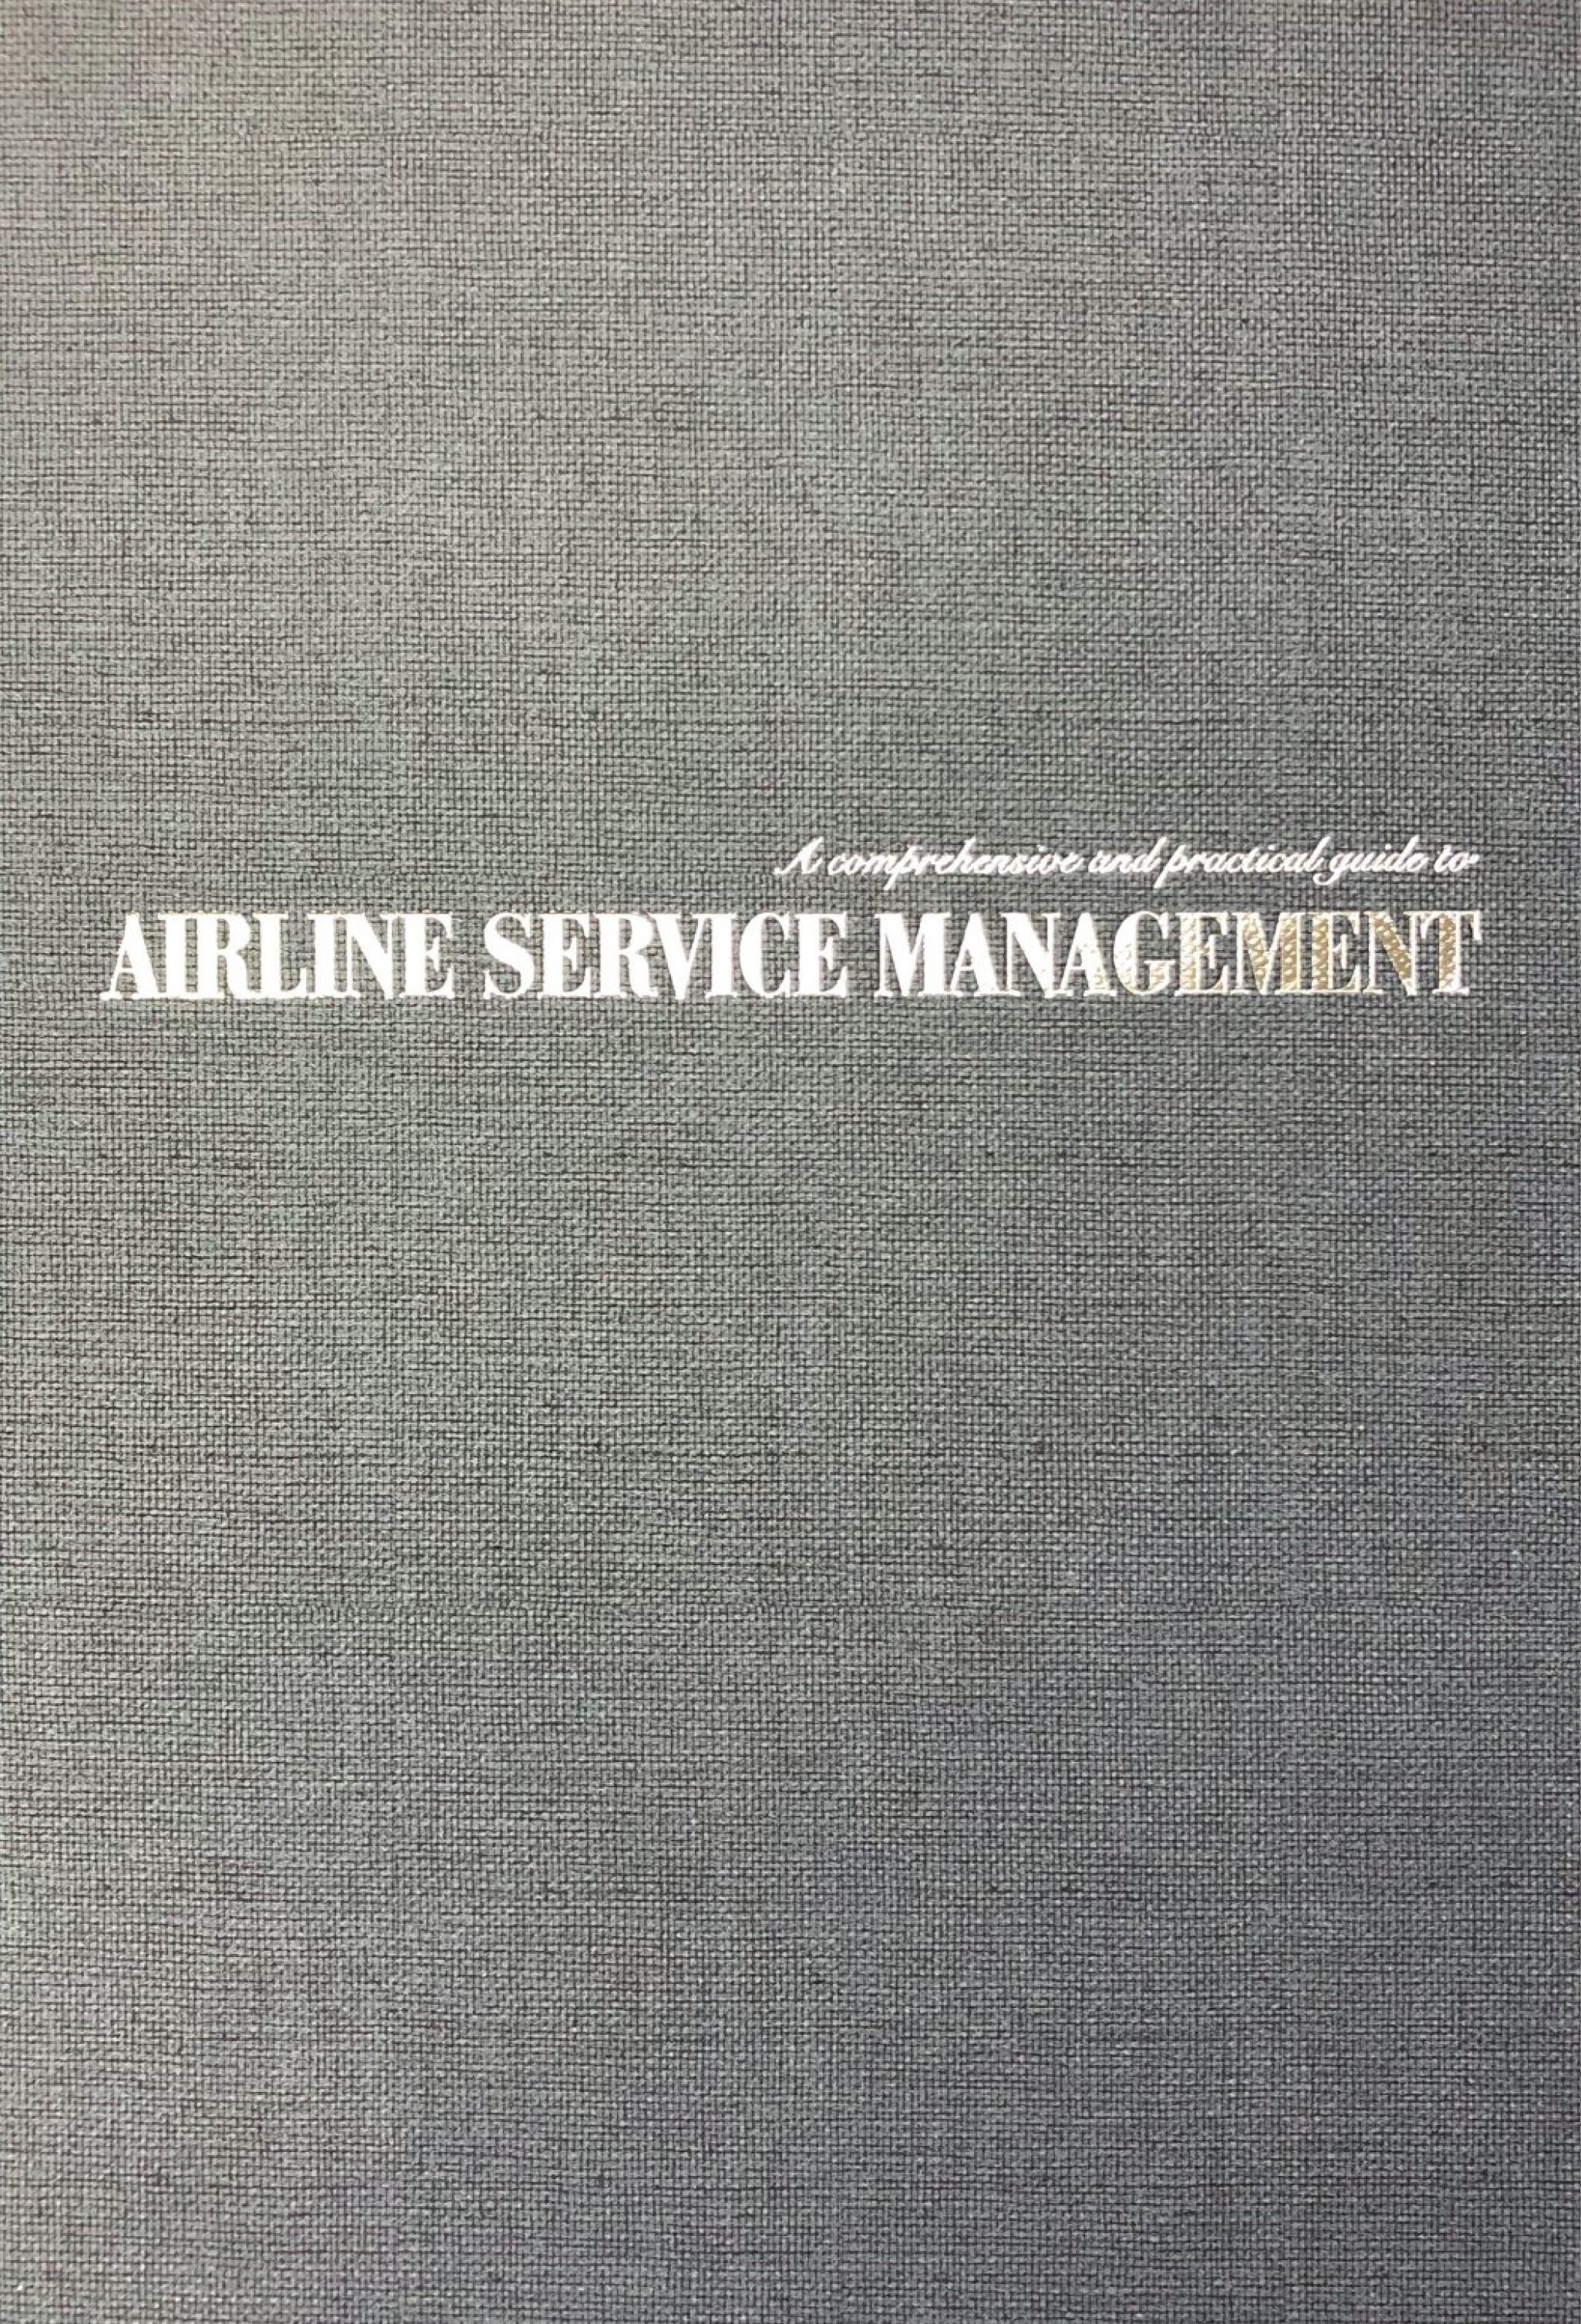 항공서비스론 (Airline Service Management) 개정판